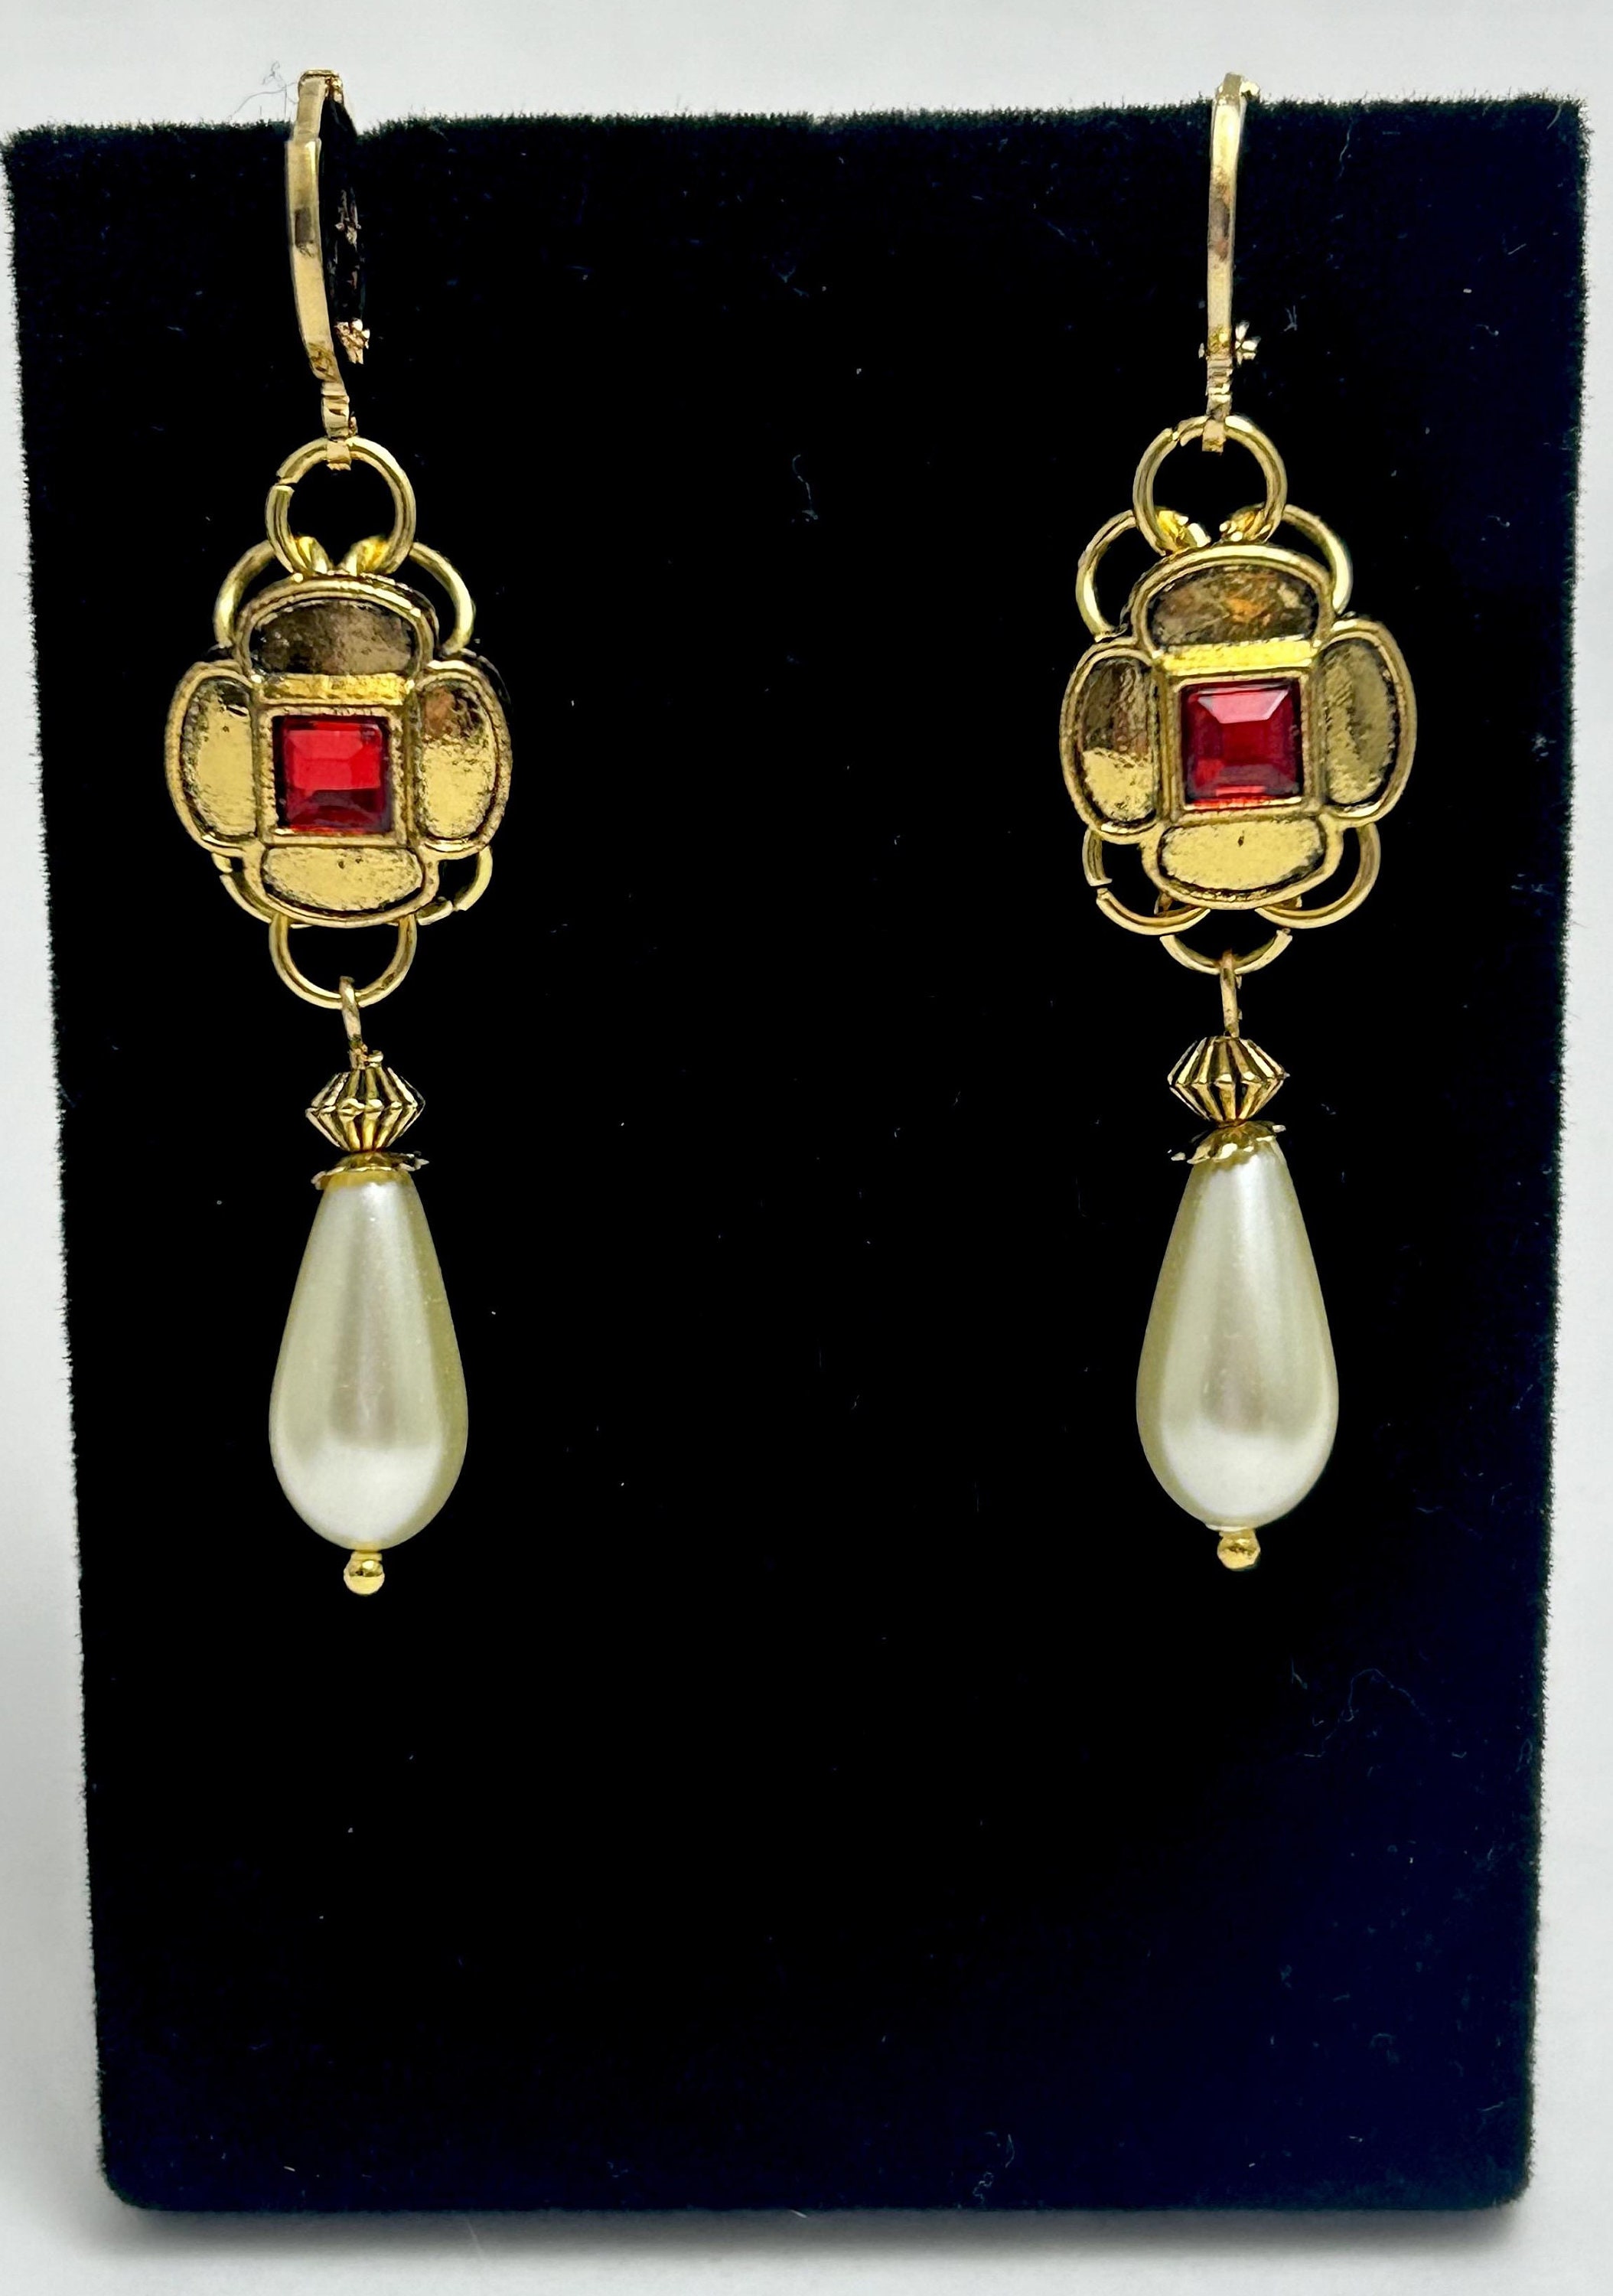 Tudor Queen's Earrings